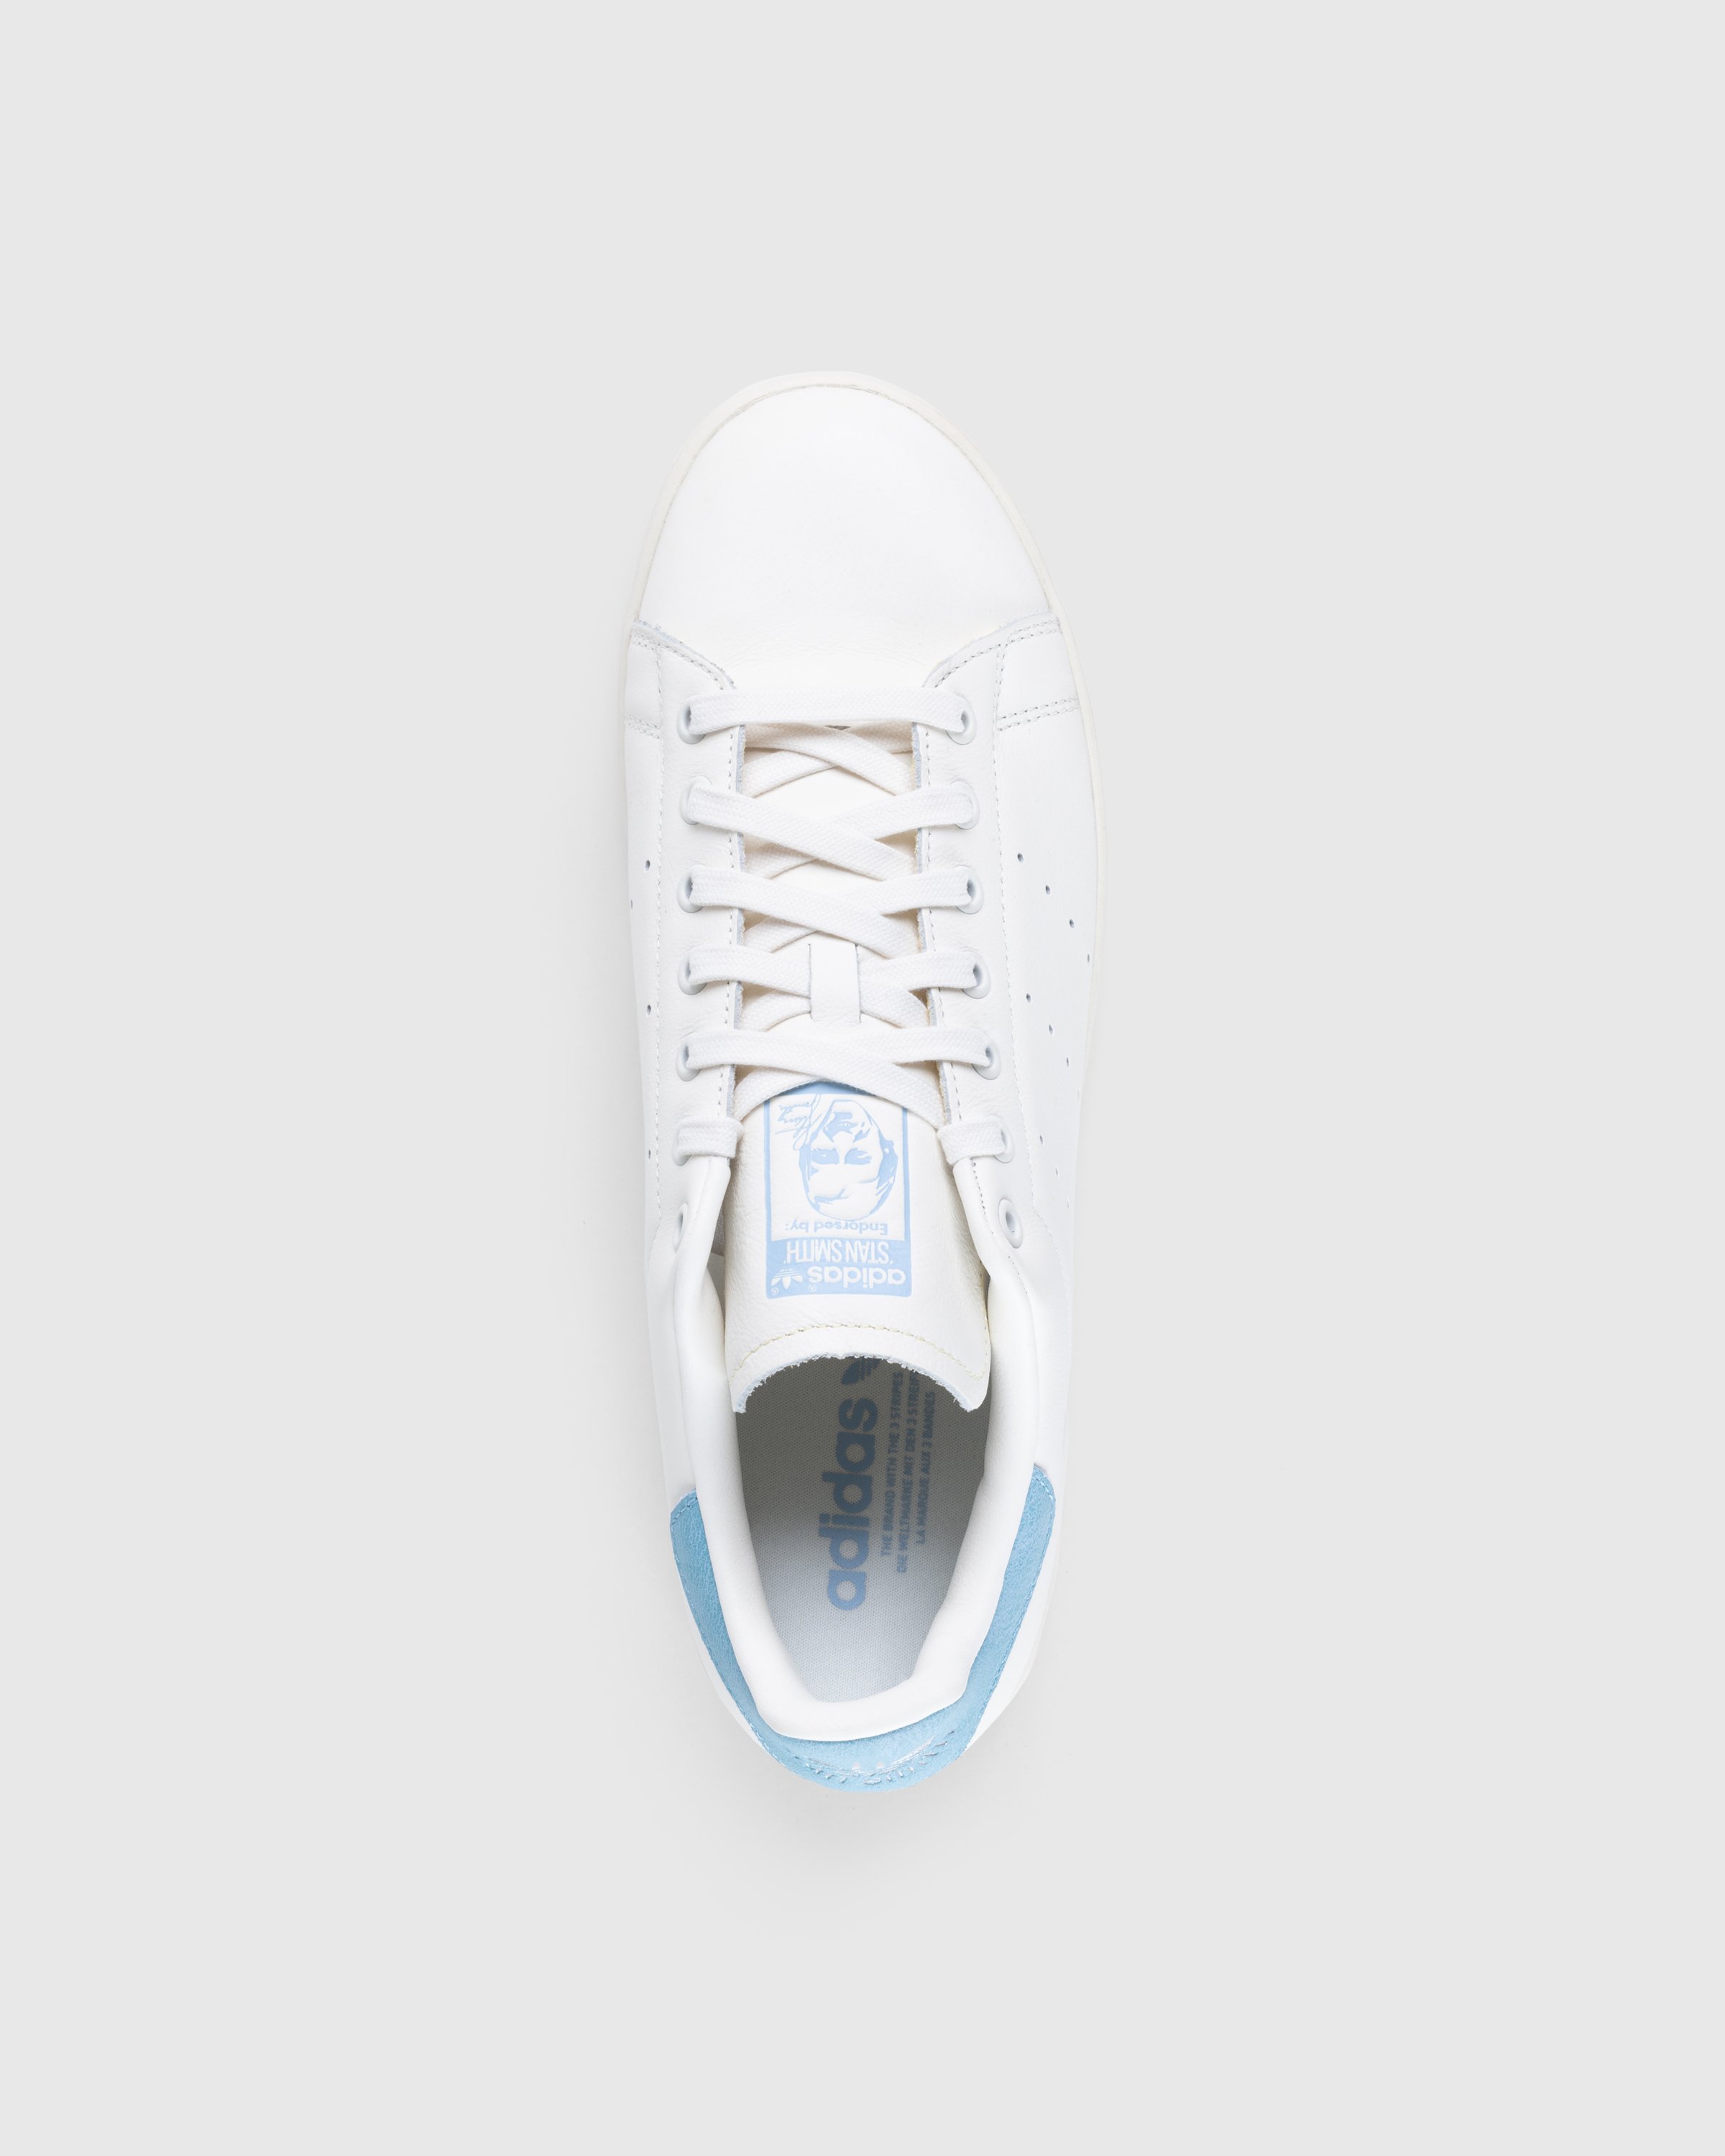 Adidas - Stan Smith White Blue - Footwear - White - Image 5